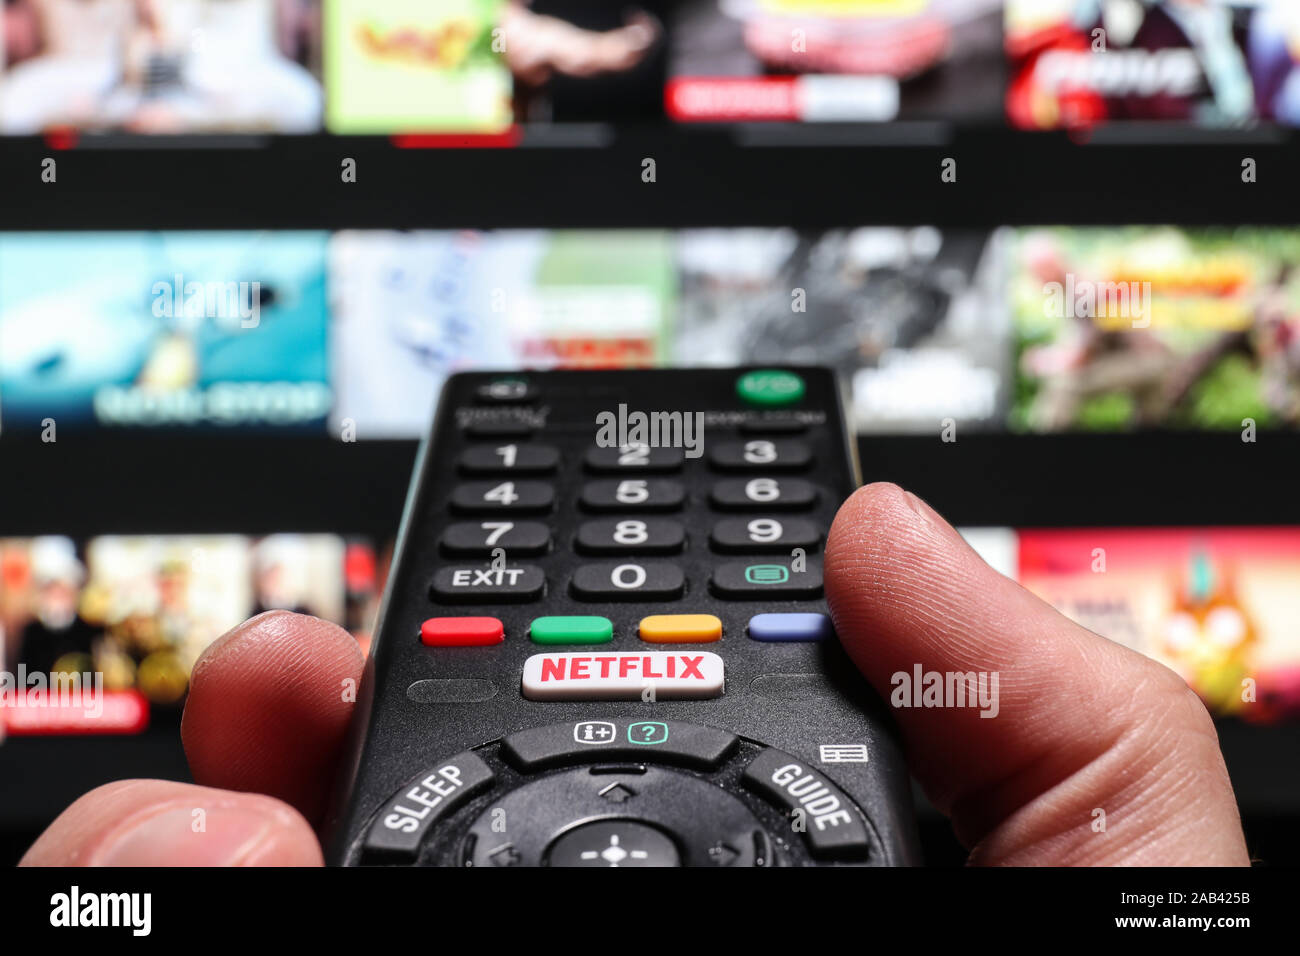 Regarder la télévision sur un smart Netflix en utilisant le bouton Netflix sur une touche de la télécommande du téléviseur Banque D'Images